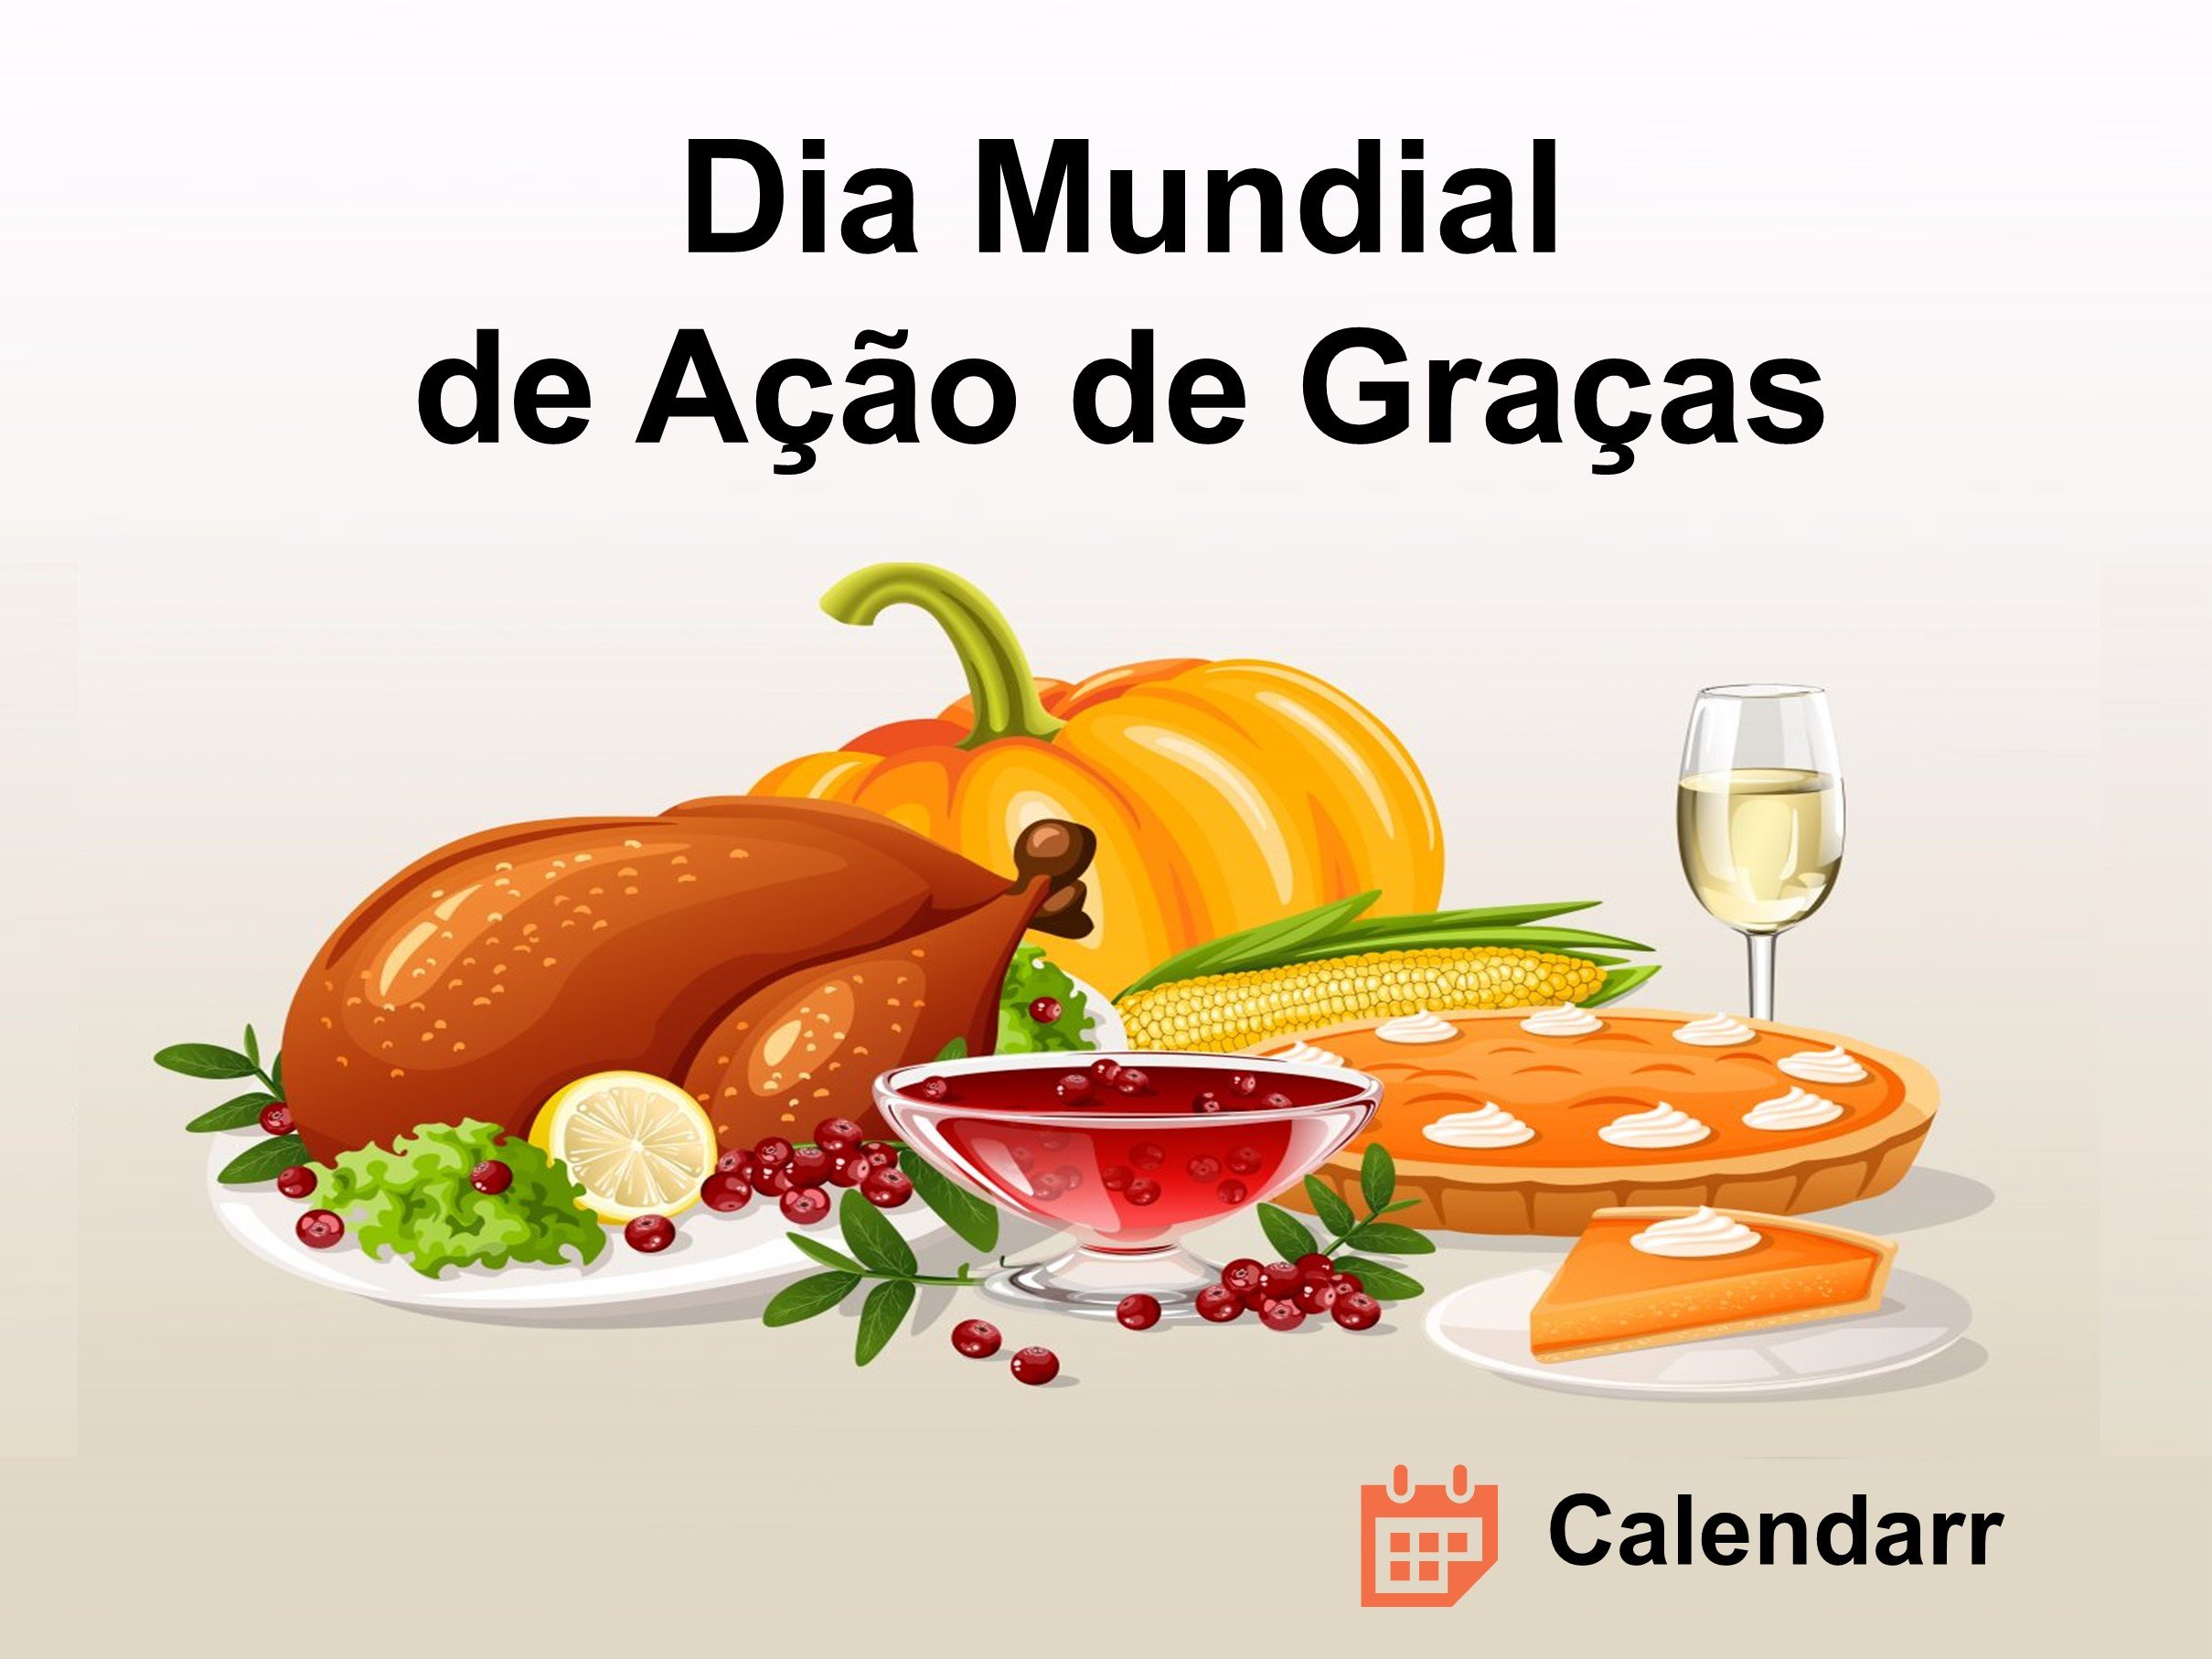 Thanksgiving: Não se comemora Dia de Ação de Graças no Brasil?